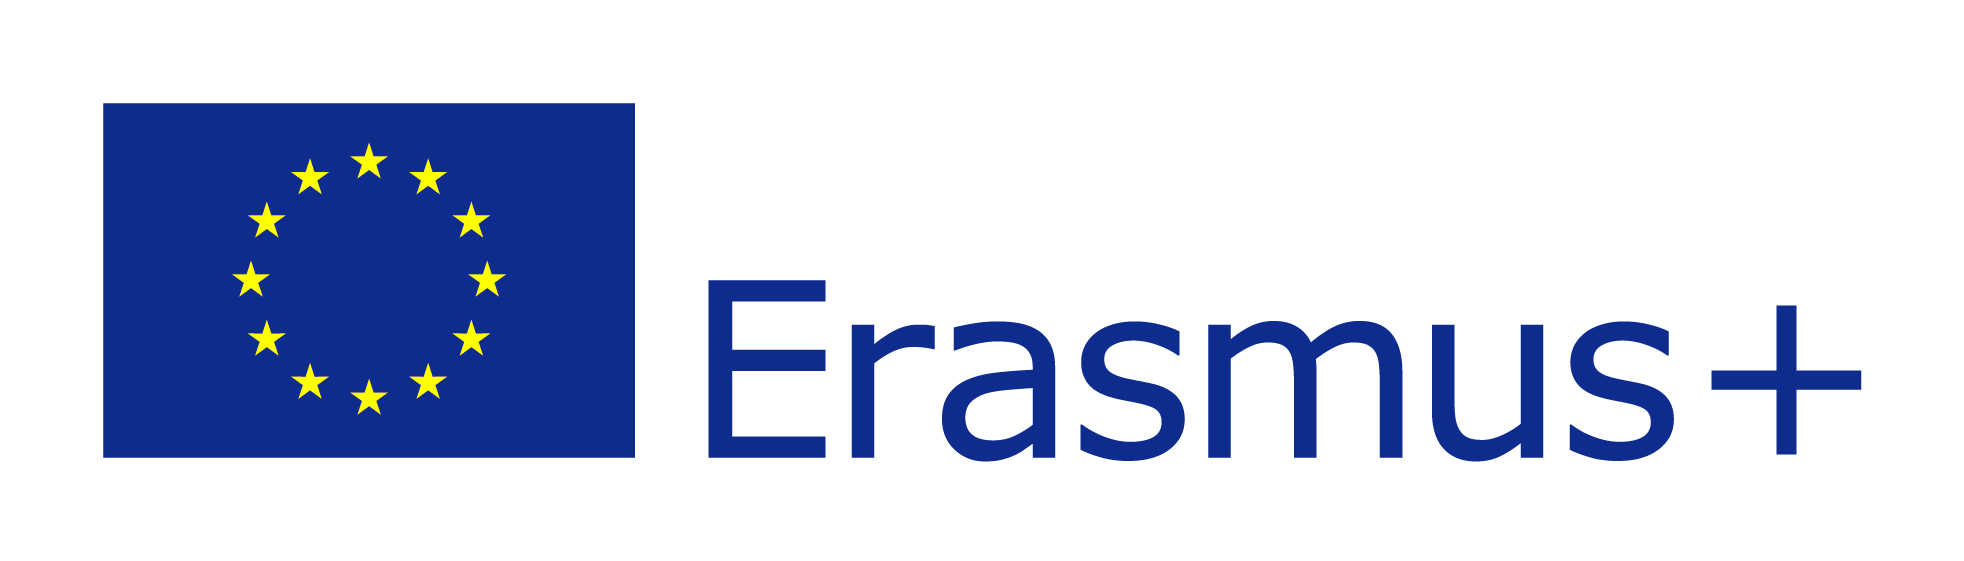 Proiect ERASMUS+ la Colegiul Economic al Banatului Montan din Reşiţa